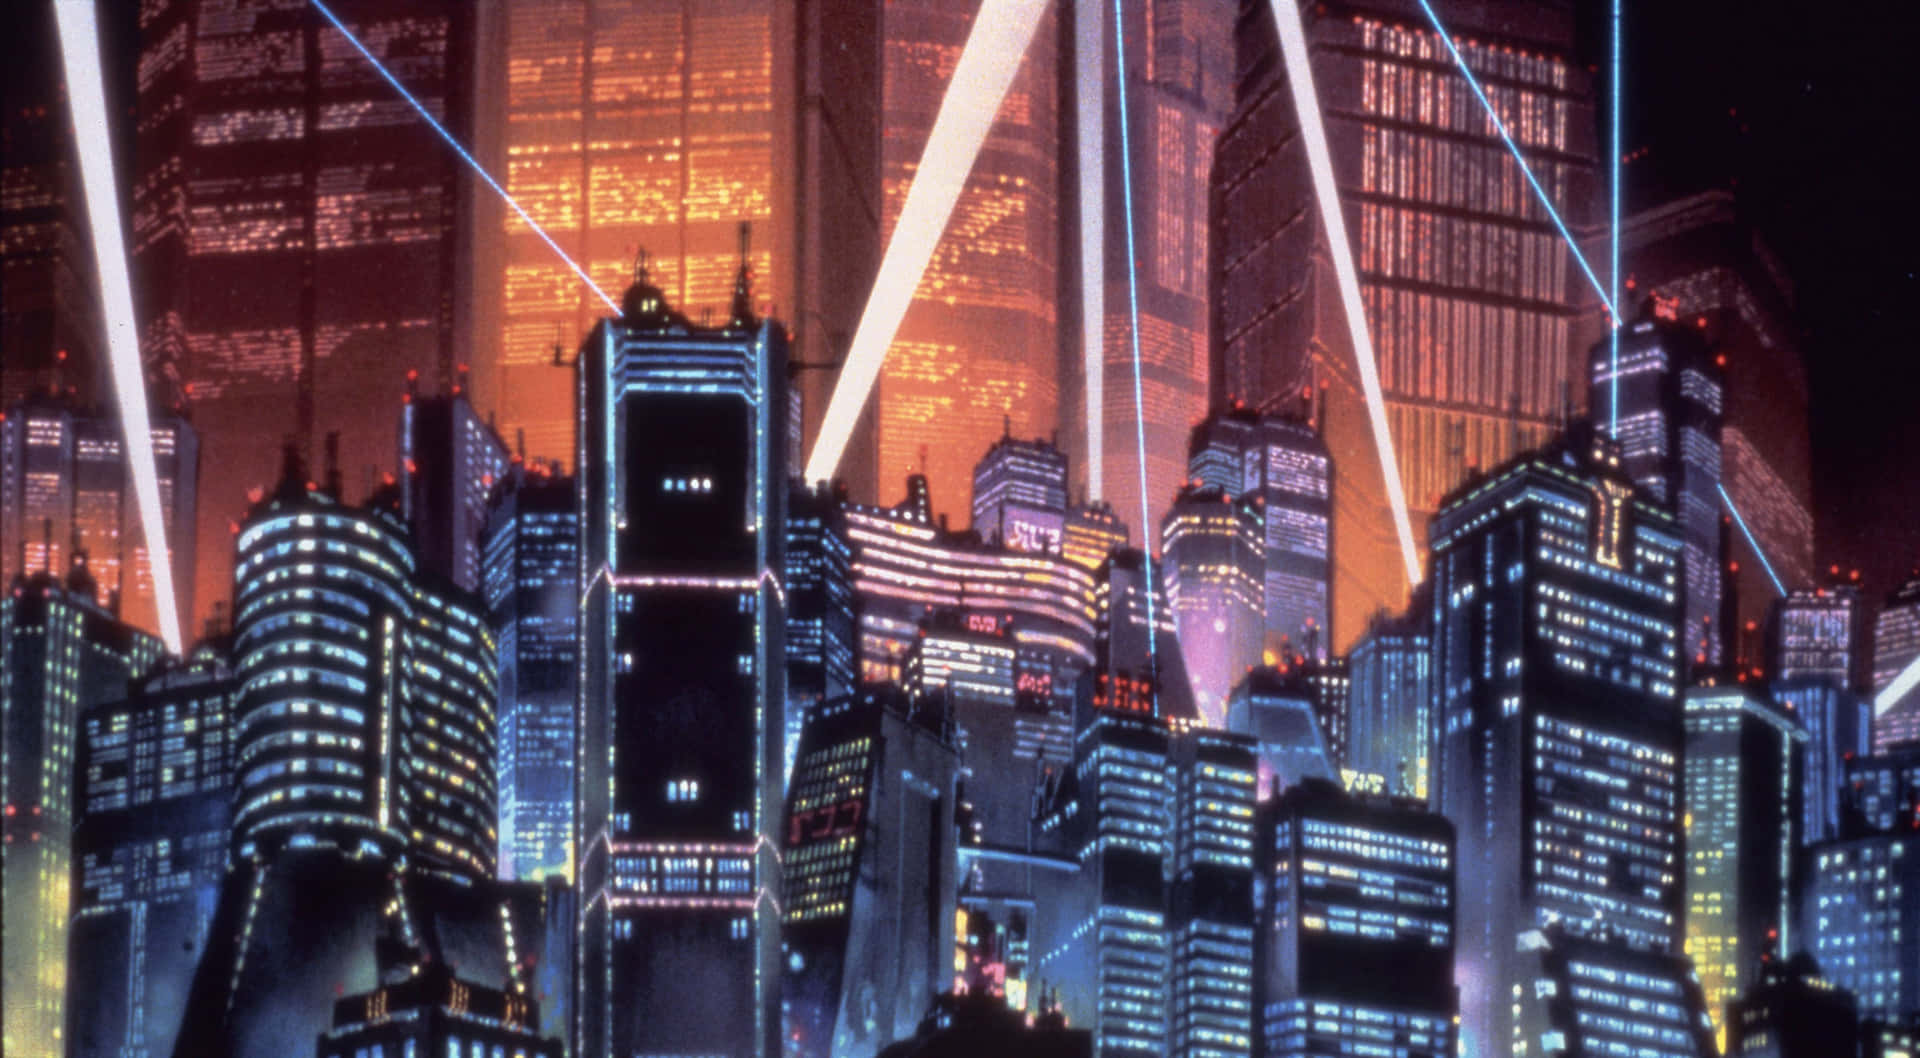 Explore the vibrant cityscape of Anime City.